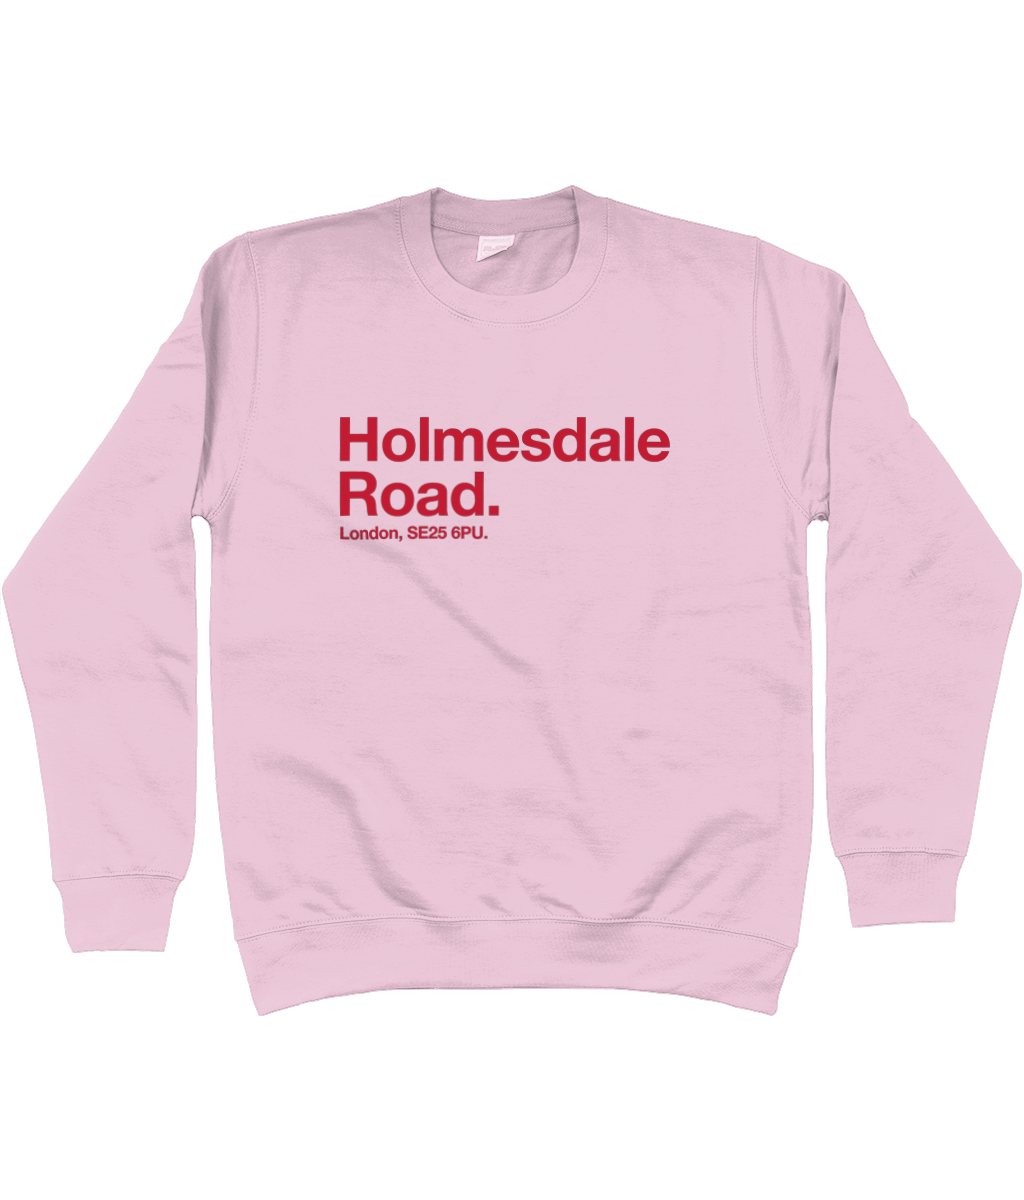 Holmesdale Road - Sweatshirt